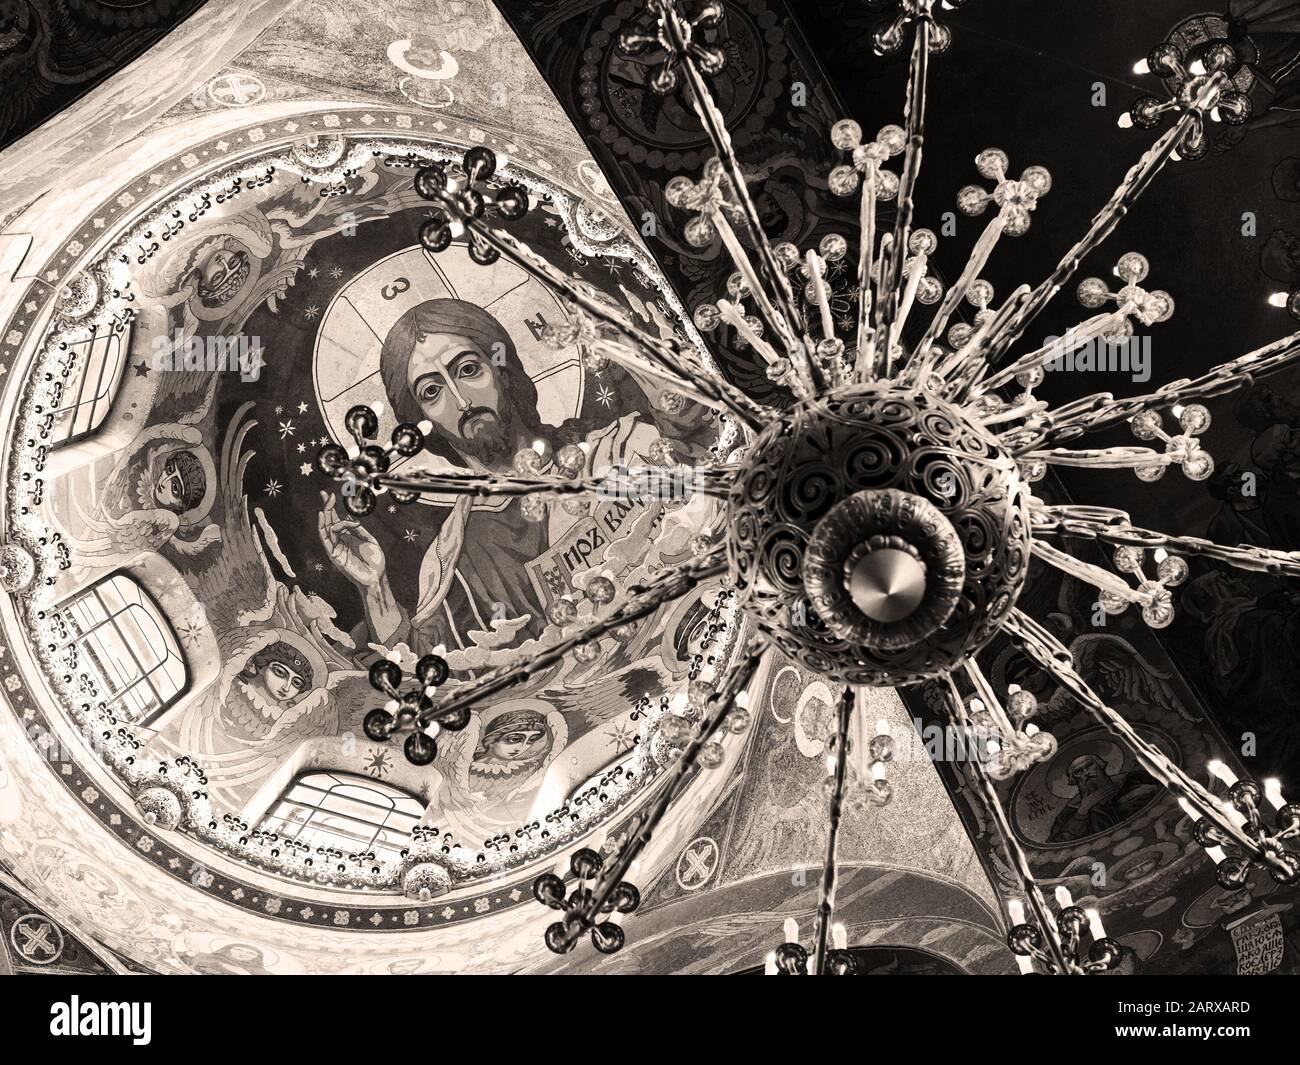 San PIETROBURGO, RUSSIA - 13 GIUGNO 2014: Soffitto della Chiesa del Salvatore sul sangue versato. E' un punto di riferimento architettonico della citta' e un monu unico Foto Stock